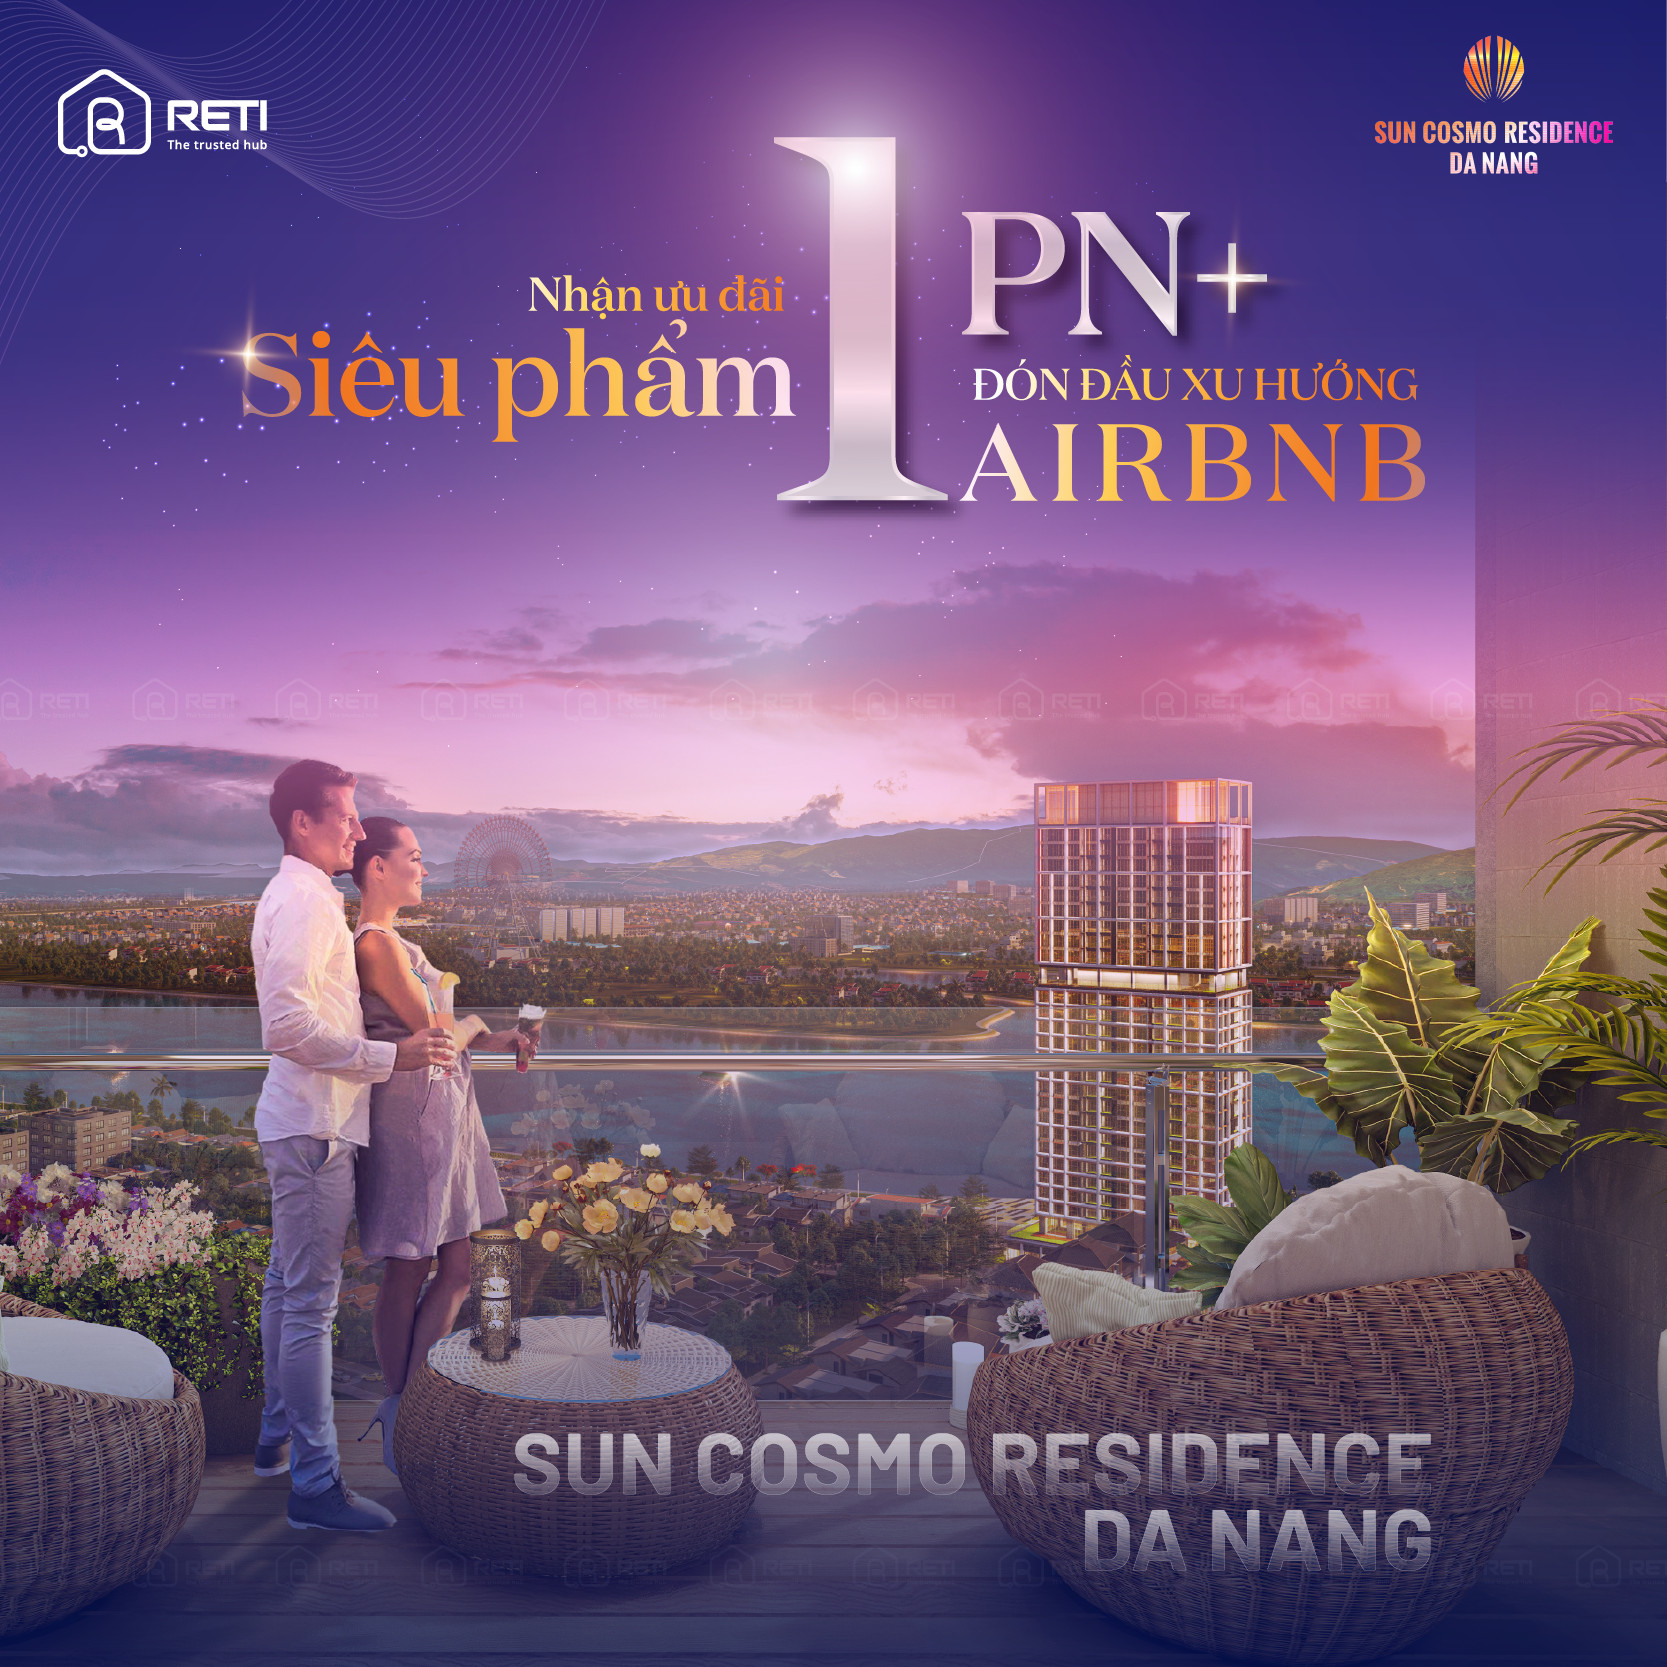 Căn hộ 1PN+ The Panoma – Tâm điểm Airbnb Tp. Đà Nẵng 2